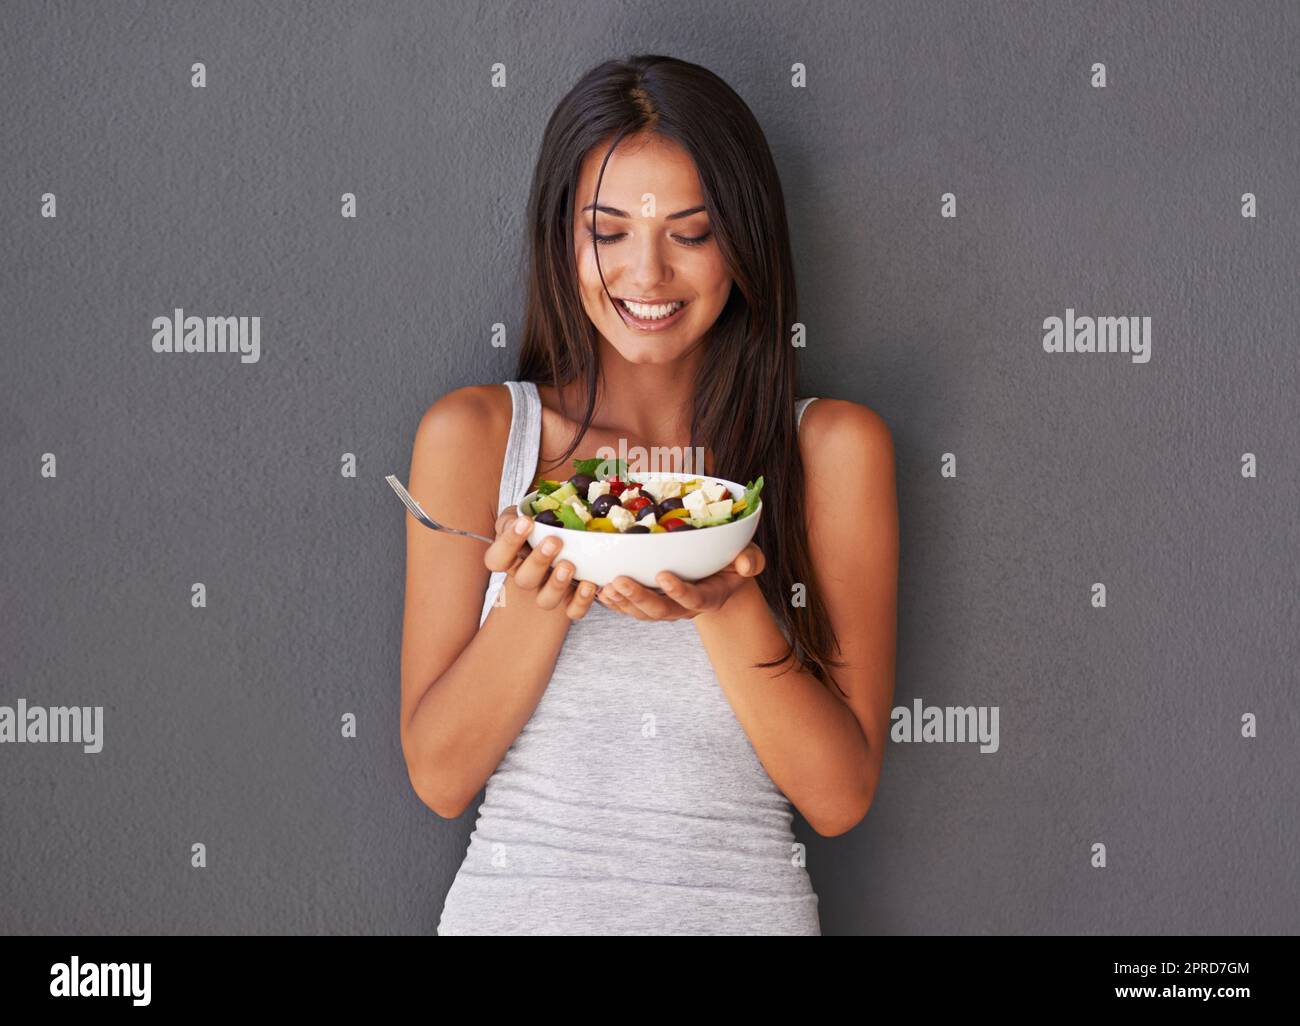 Une jeune femme en bonne santé mangeant son saladier frais. Souriante belle femme tenant et appréciant manger son propre plat vert de régime de légumes dans le cadre de son style de vie vegan bien-être Banque D'Images